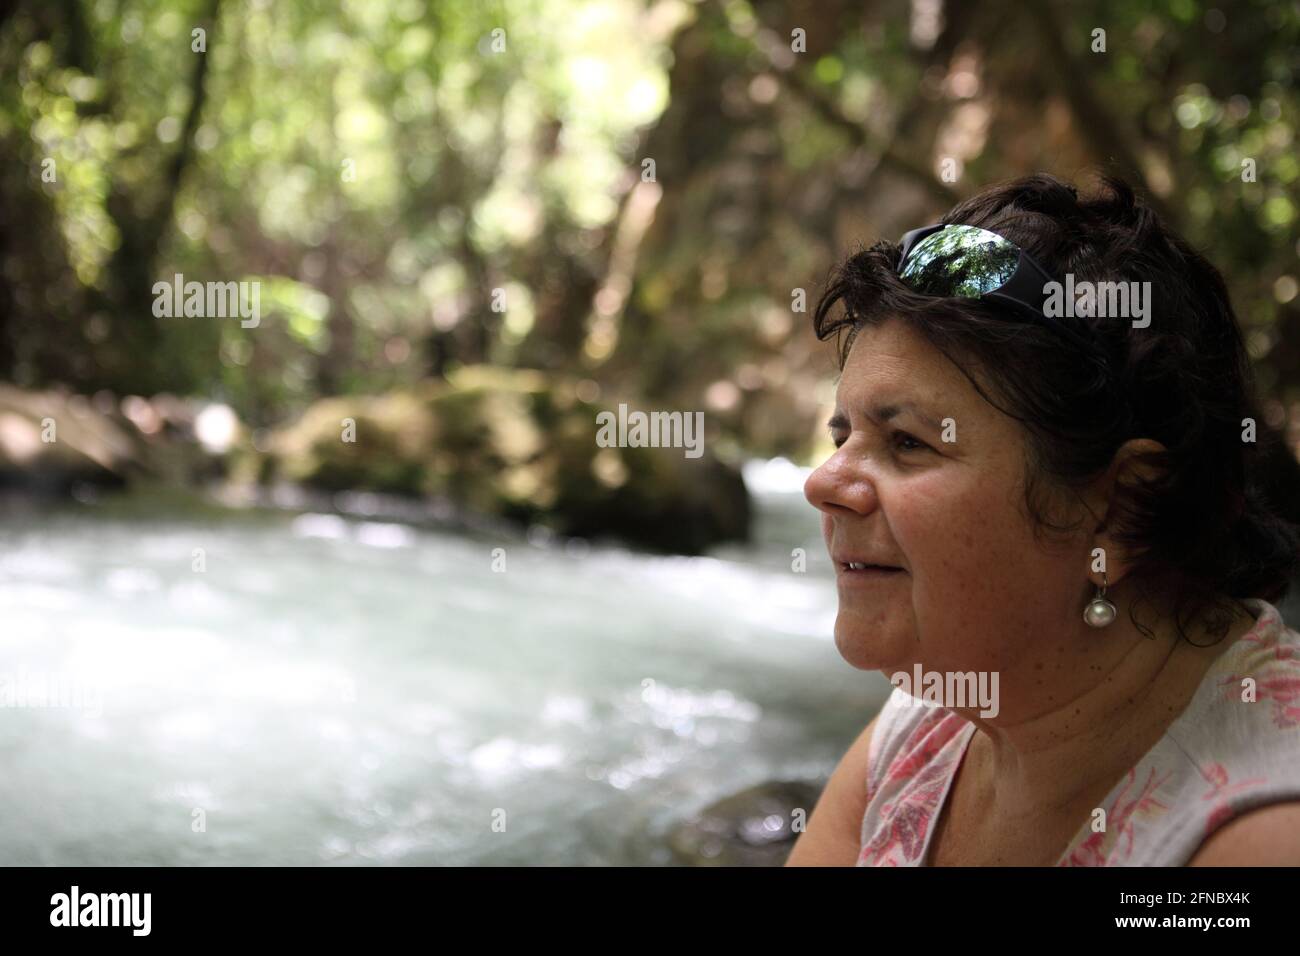 Profil einer lächelnden 62-jährigen älteren Frau im Wald mit dem plätschernden Fluss Banias, einer der drei Quellen des Jordan. Stockfoto